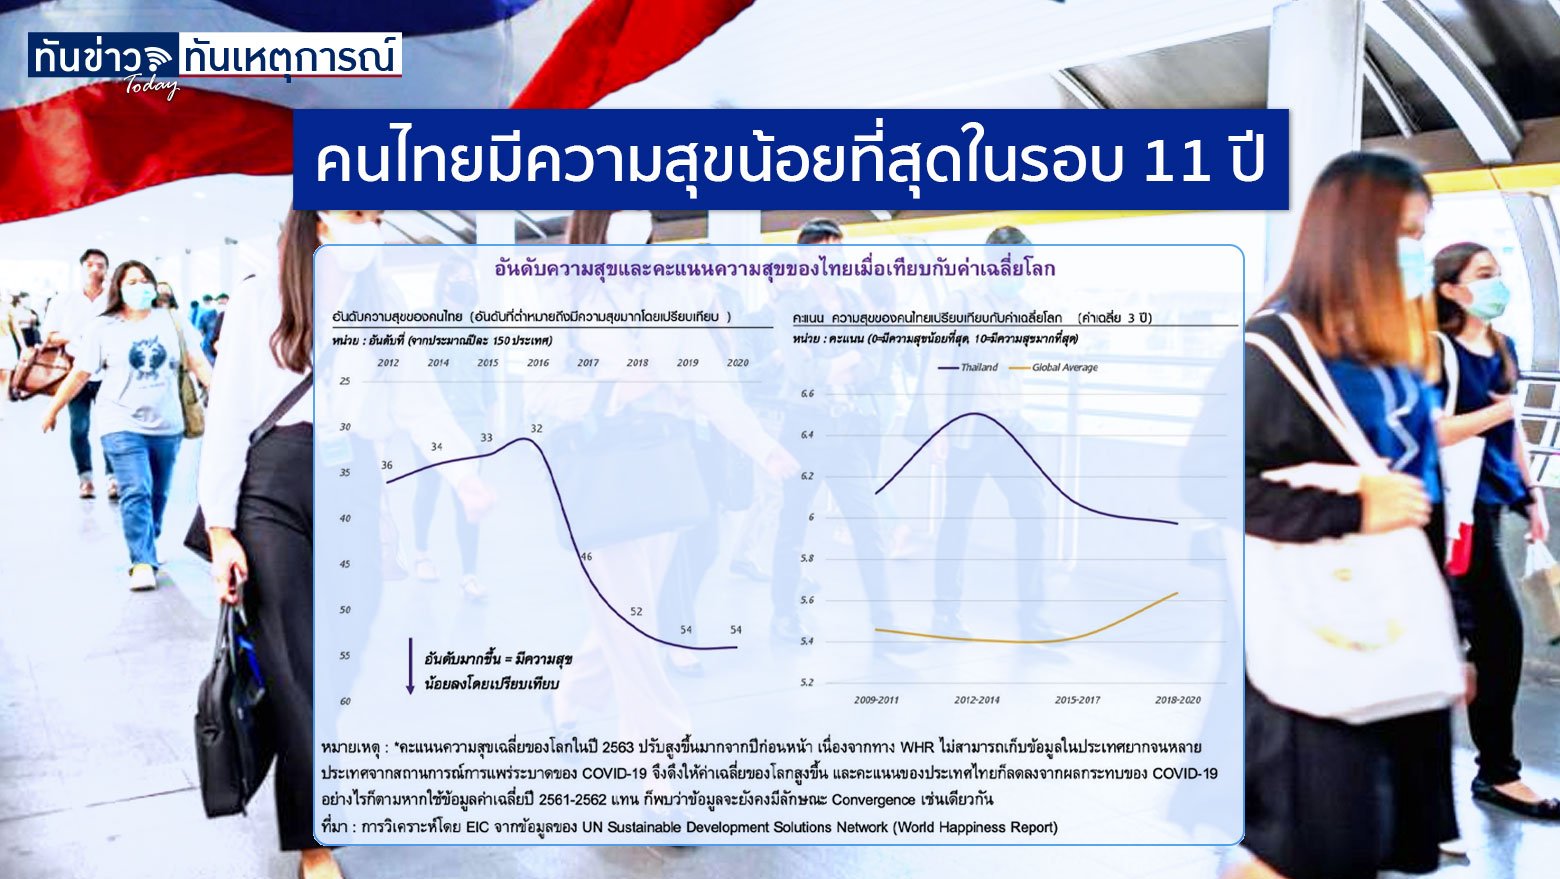 คนไทยมีความสุขน้อยที่สุดในรอบ 11 ปี